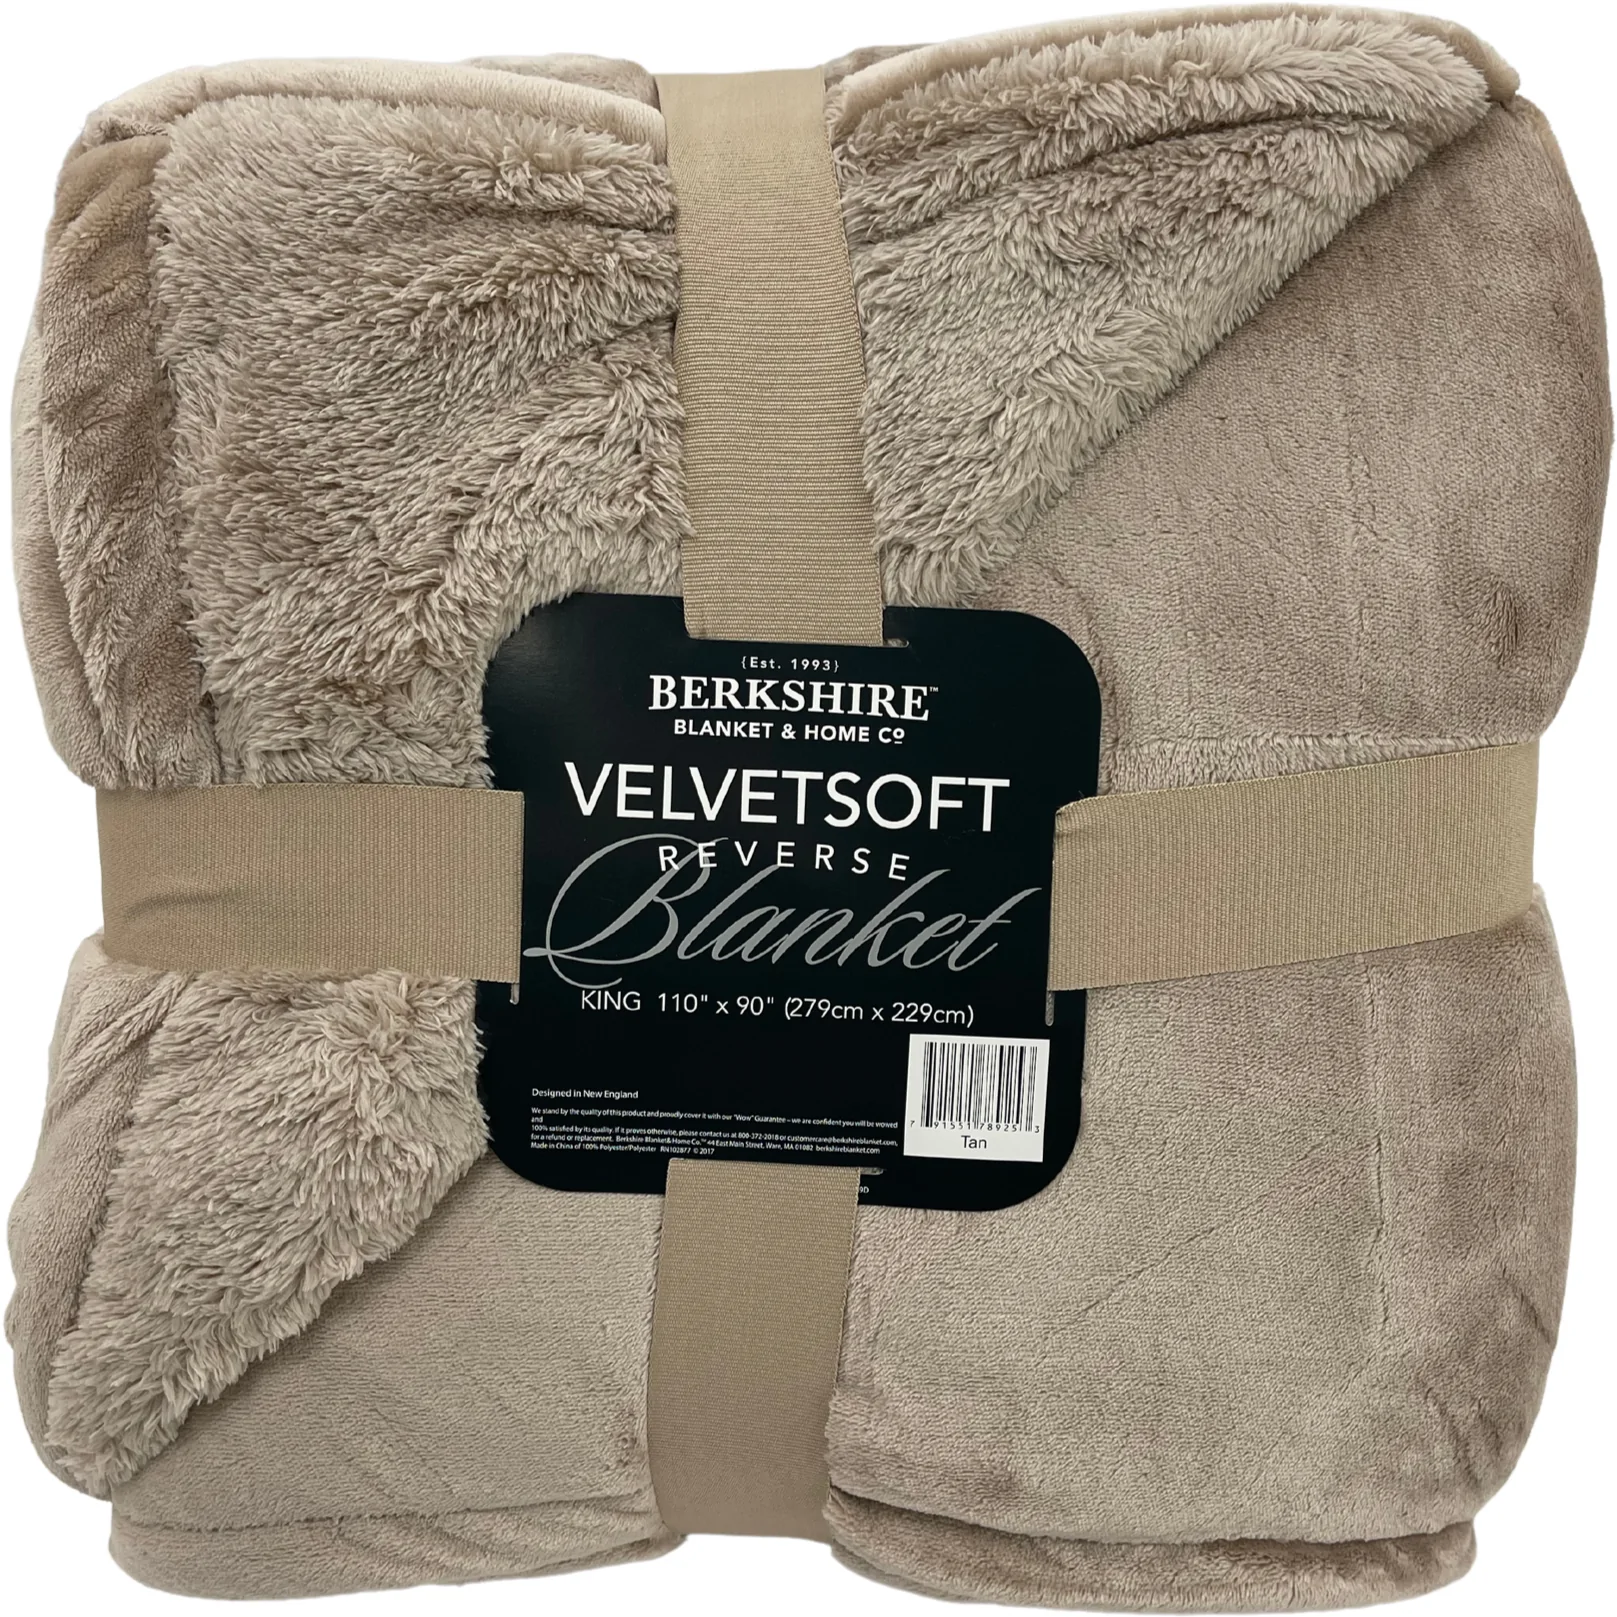 Berkshire Velvet Soft Blanket / 110" x 90" Blanket / King Size / Super Soft / Various Colours